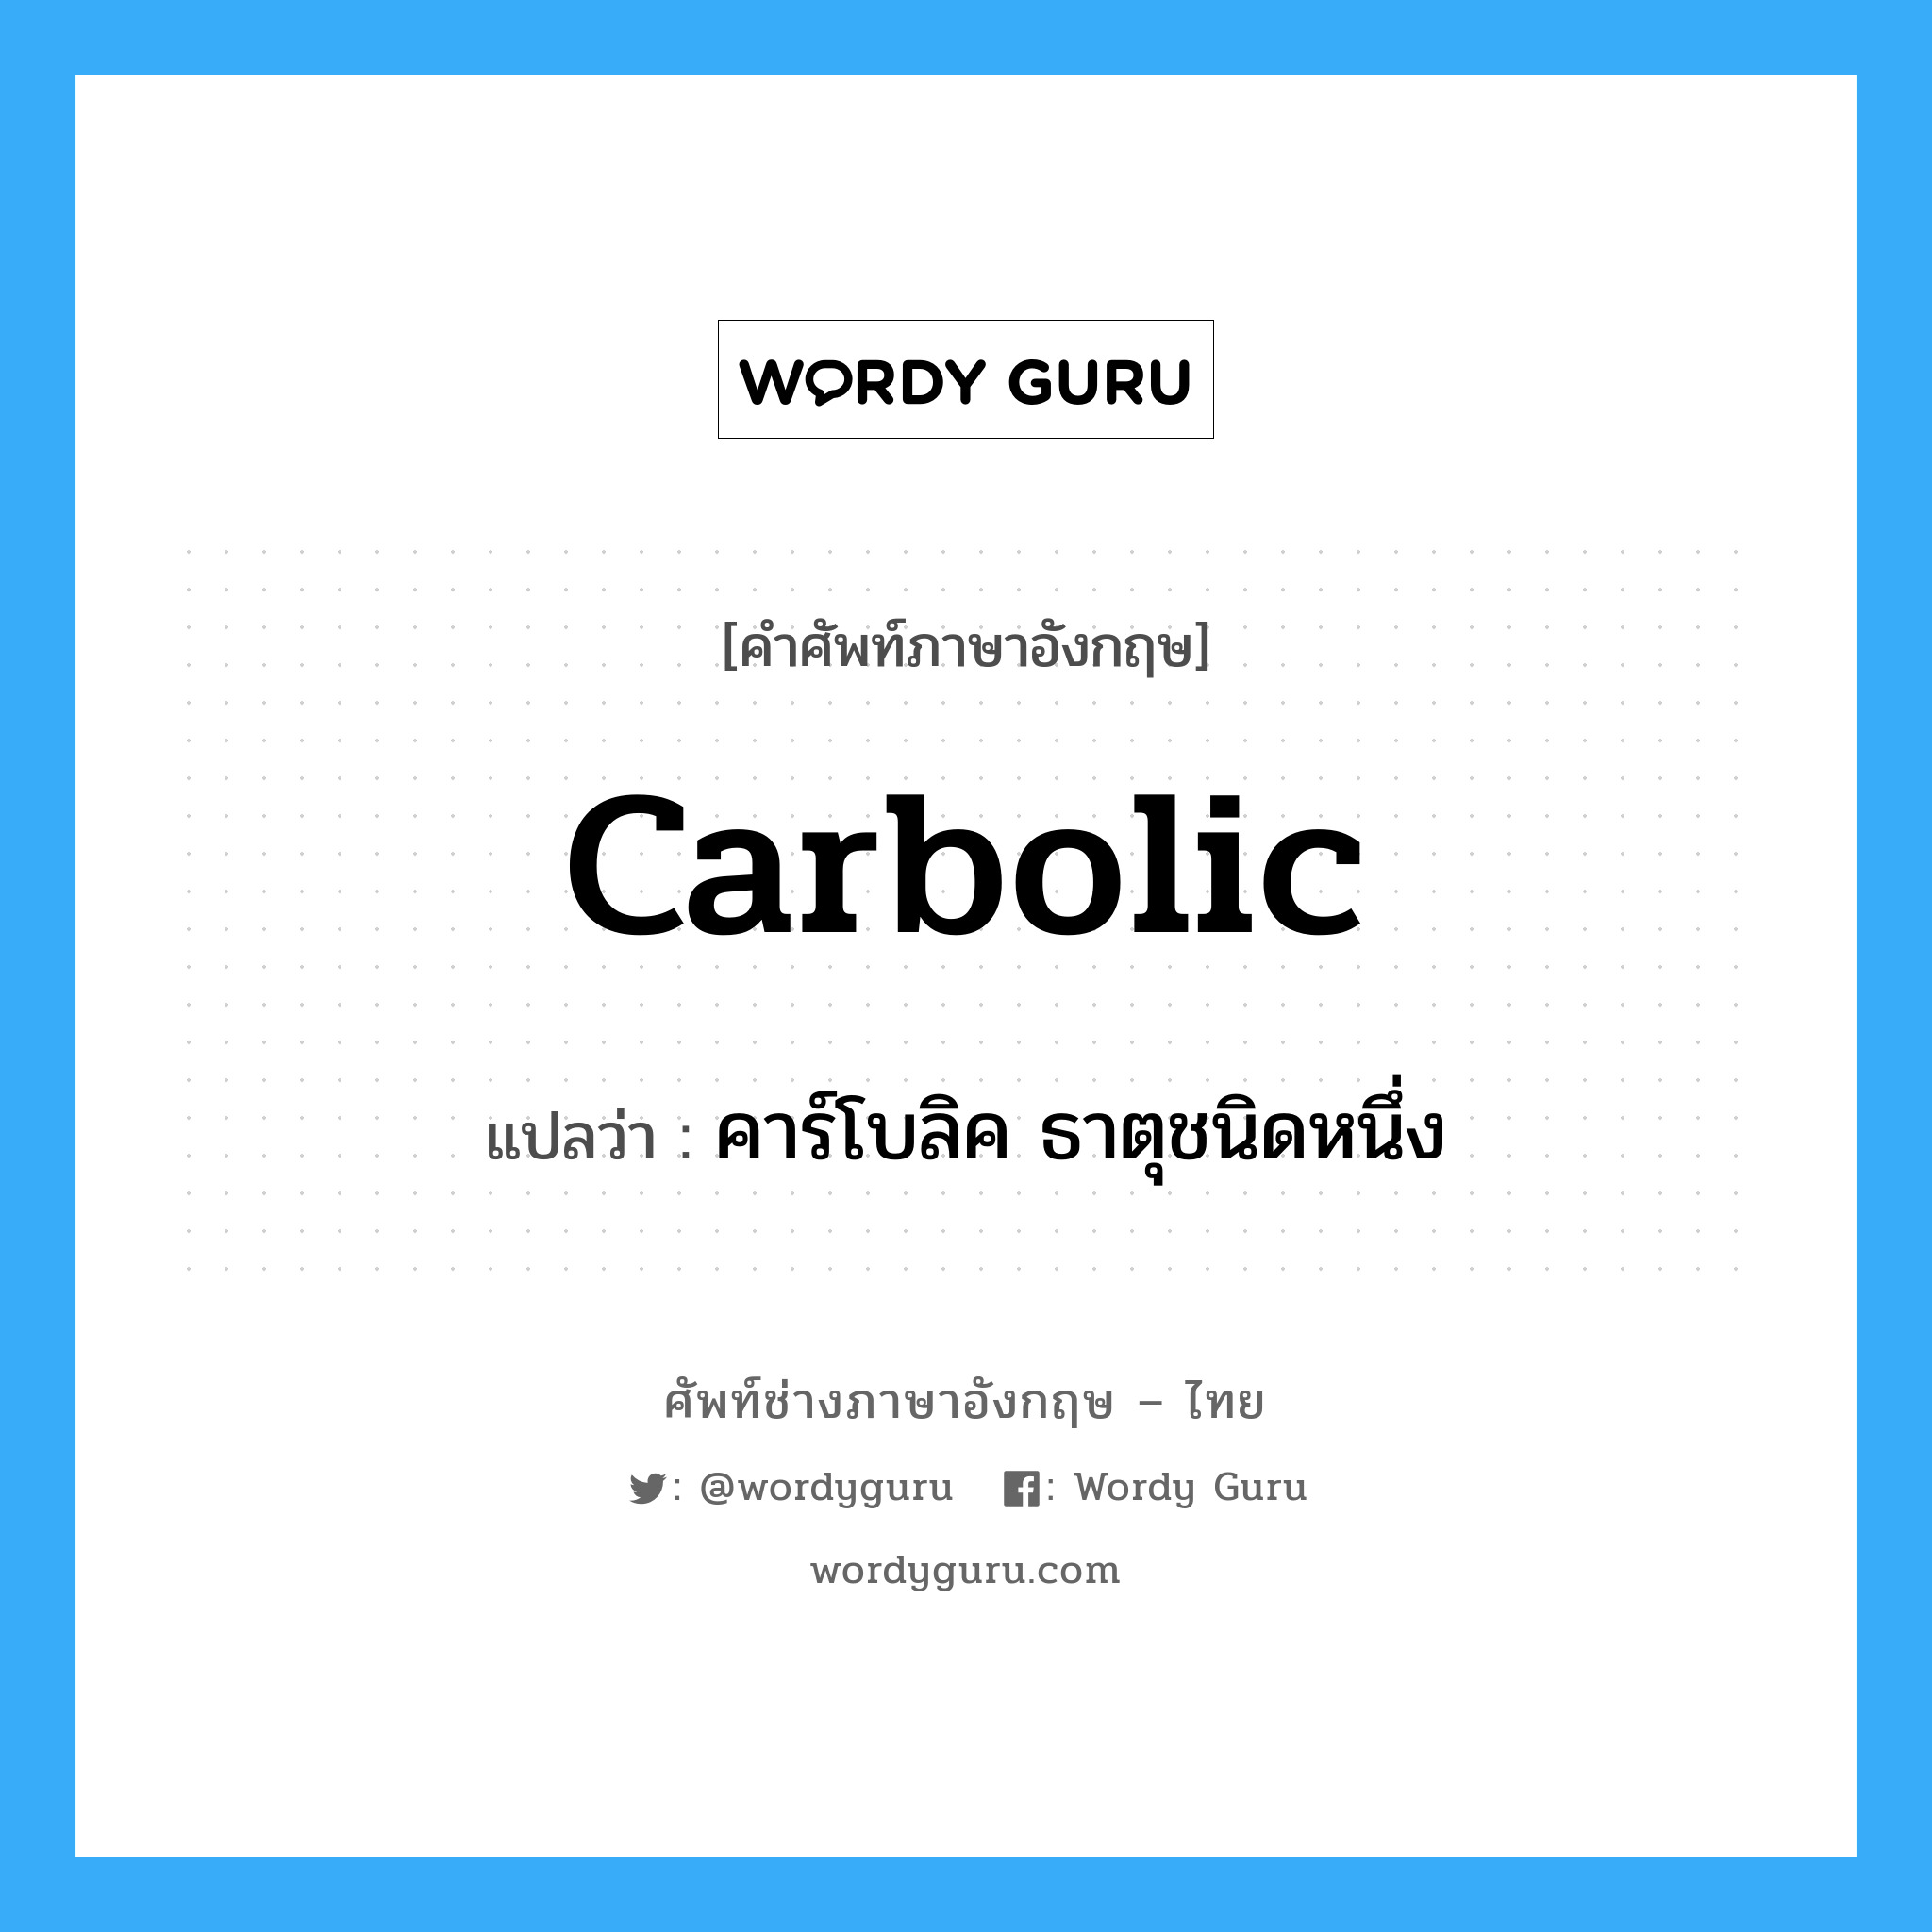 คาร์โบลิค ธาตุชนิดหนึ่ง ภาษาอังกฤษ?, คำศัพท์ช่างภาษาอังกฤษ - ไทย คาร์โบลิค ธาตุชนิดหนึ่ง คำศัพท์ภาษาอังกฤษ คาร์โบลิค ธาตุชนิดหนึ่ง แปลว่า carbolic